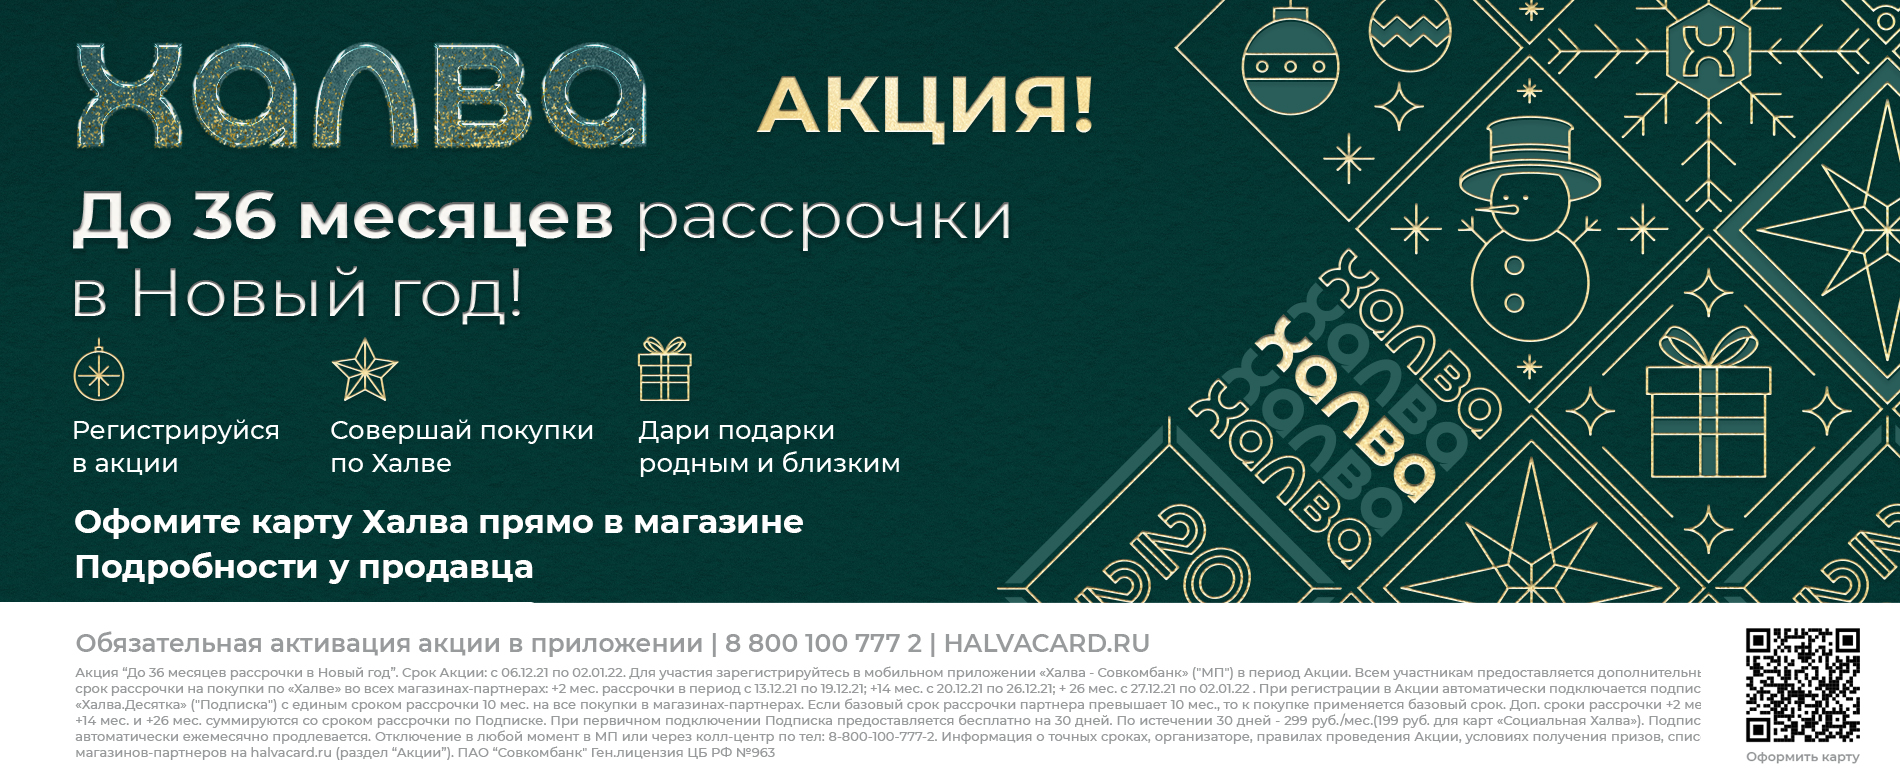 Золотая Антилопа Обувь Хабаровск Интернет Магазин